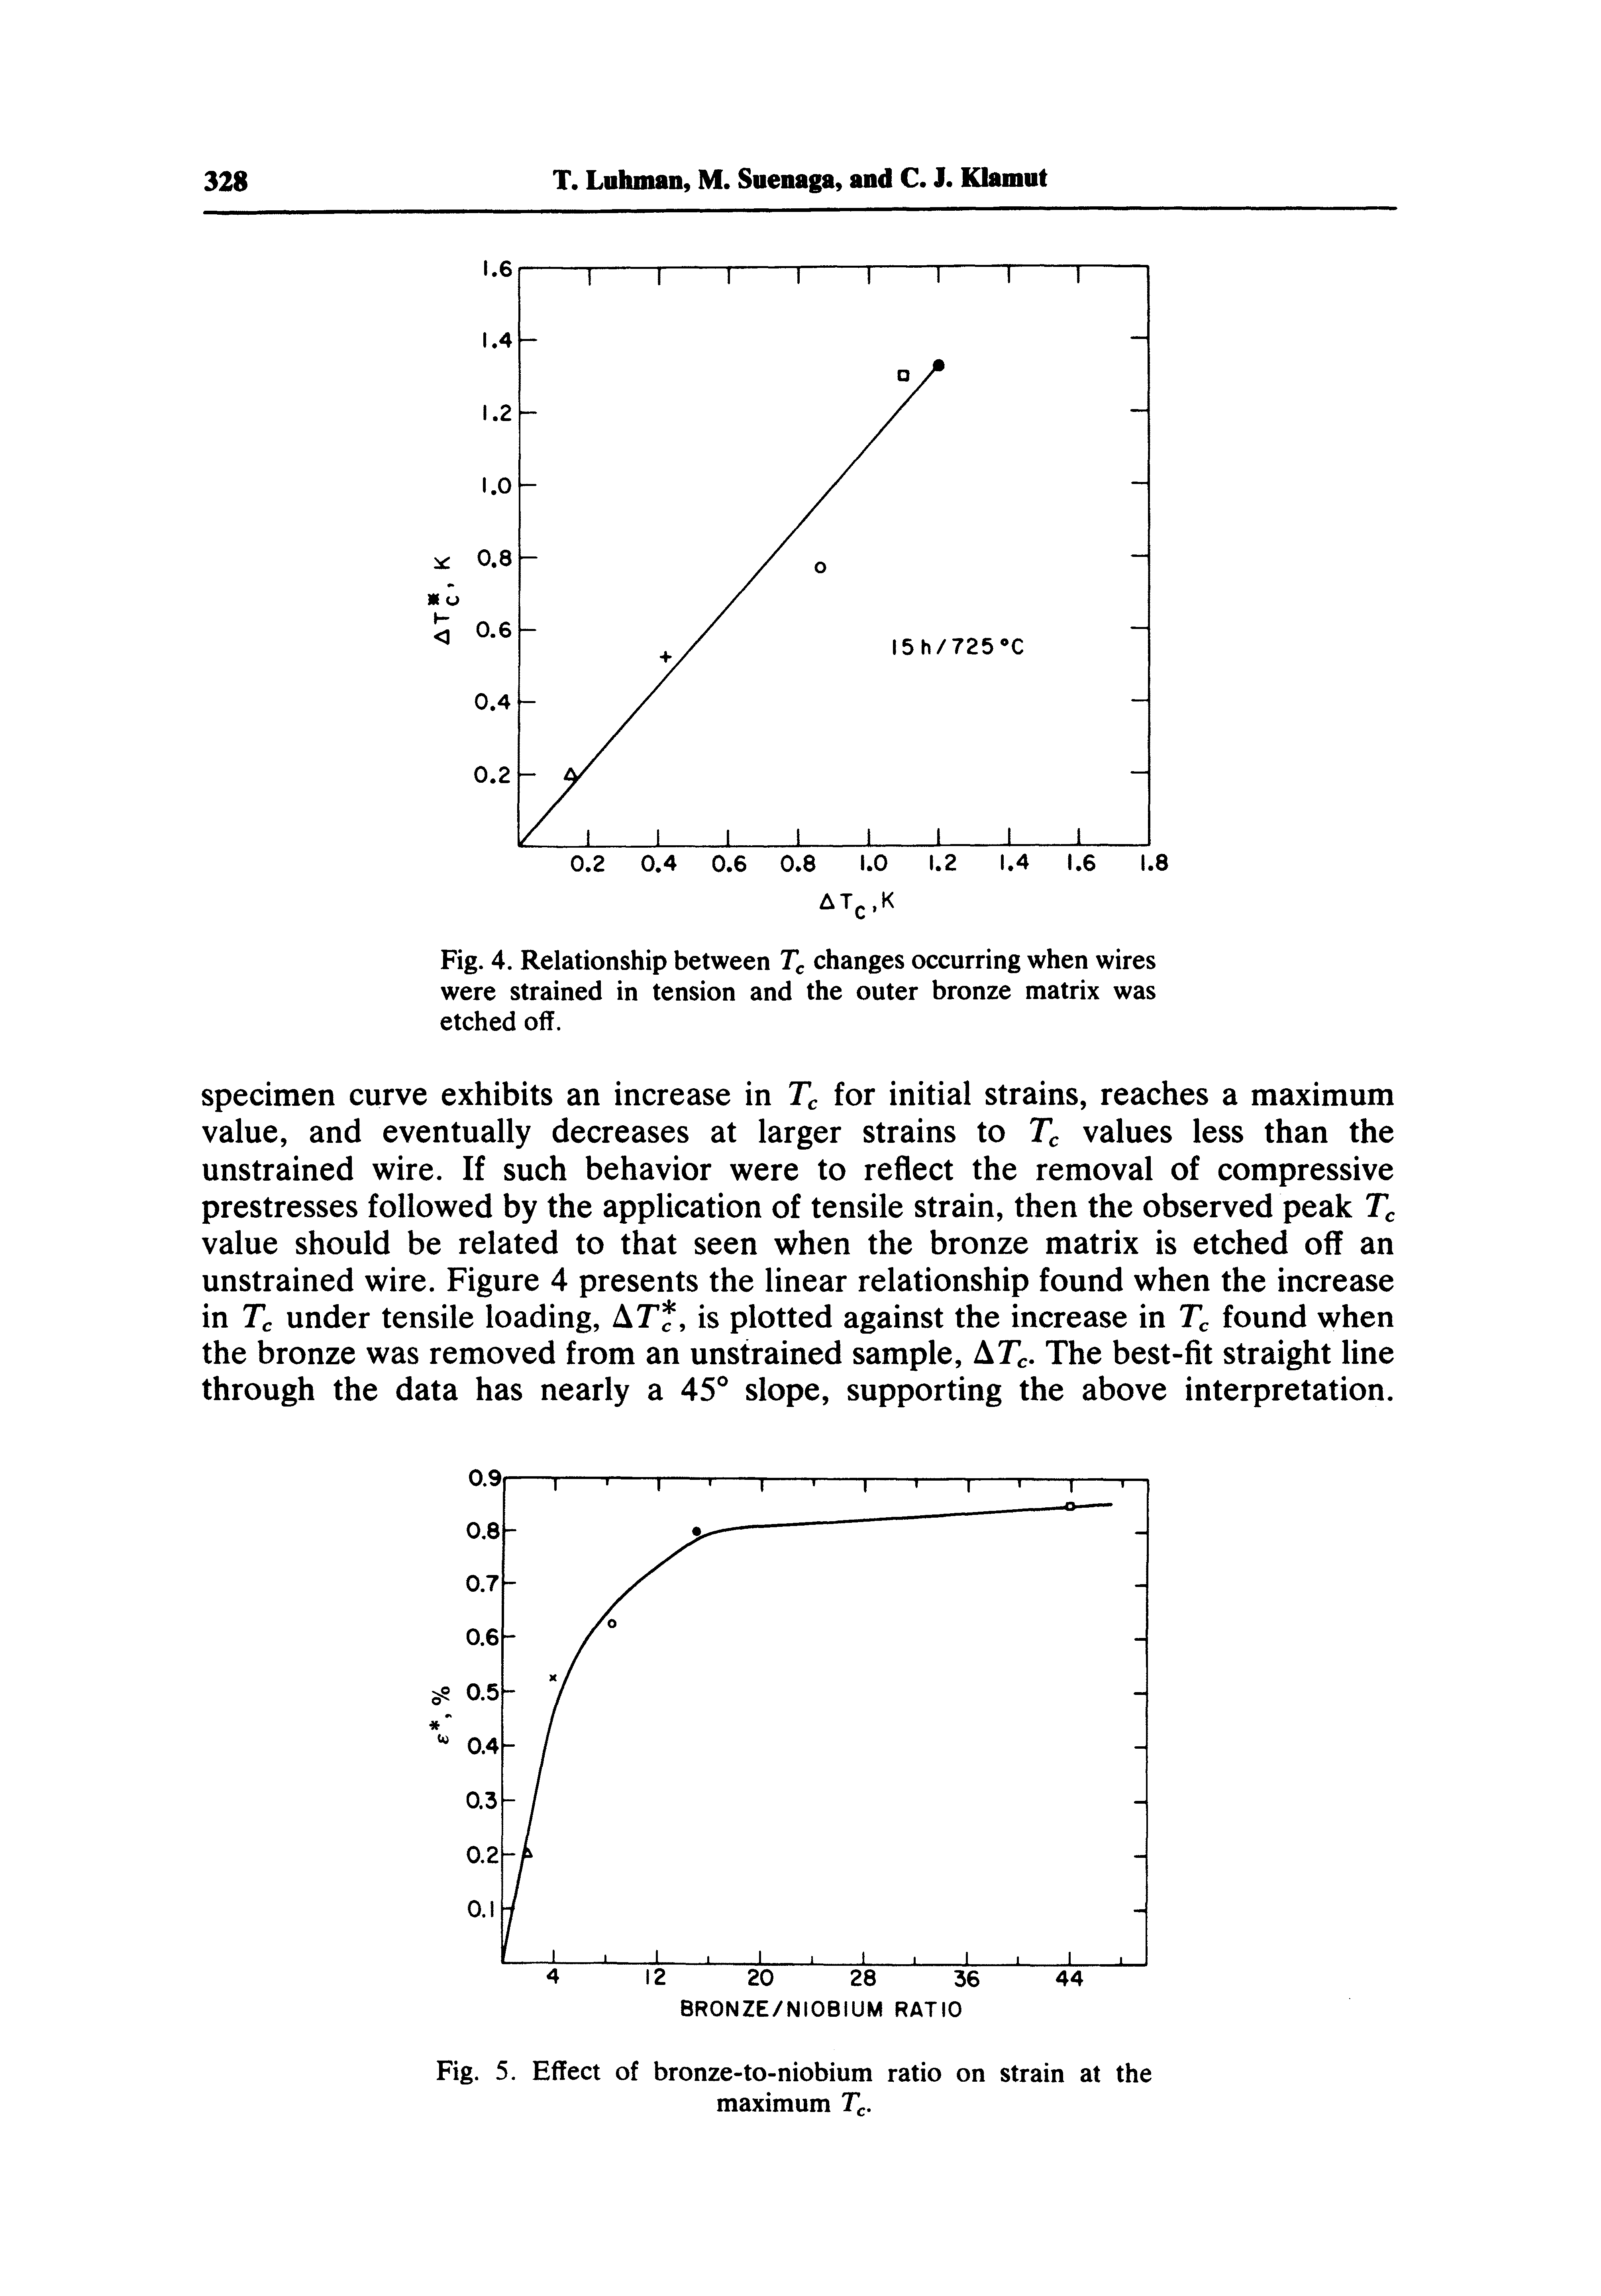 Fig. 5. Effect of bronze-to-niobium ratio on strain at the maximum T.